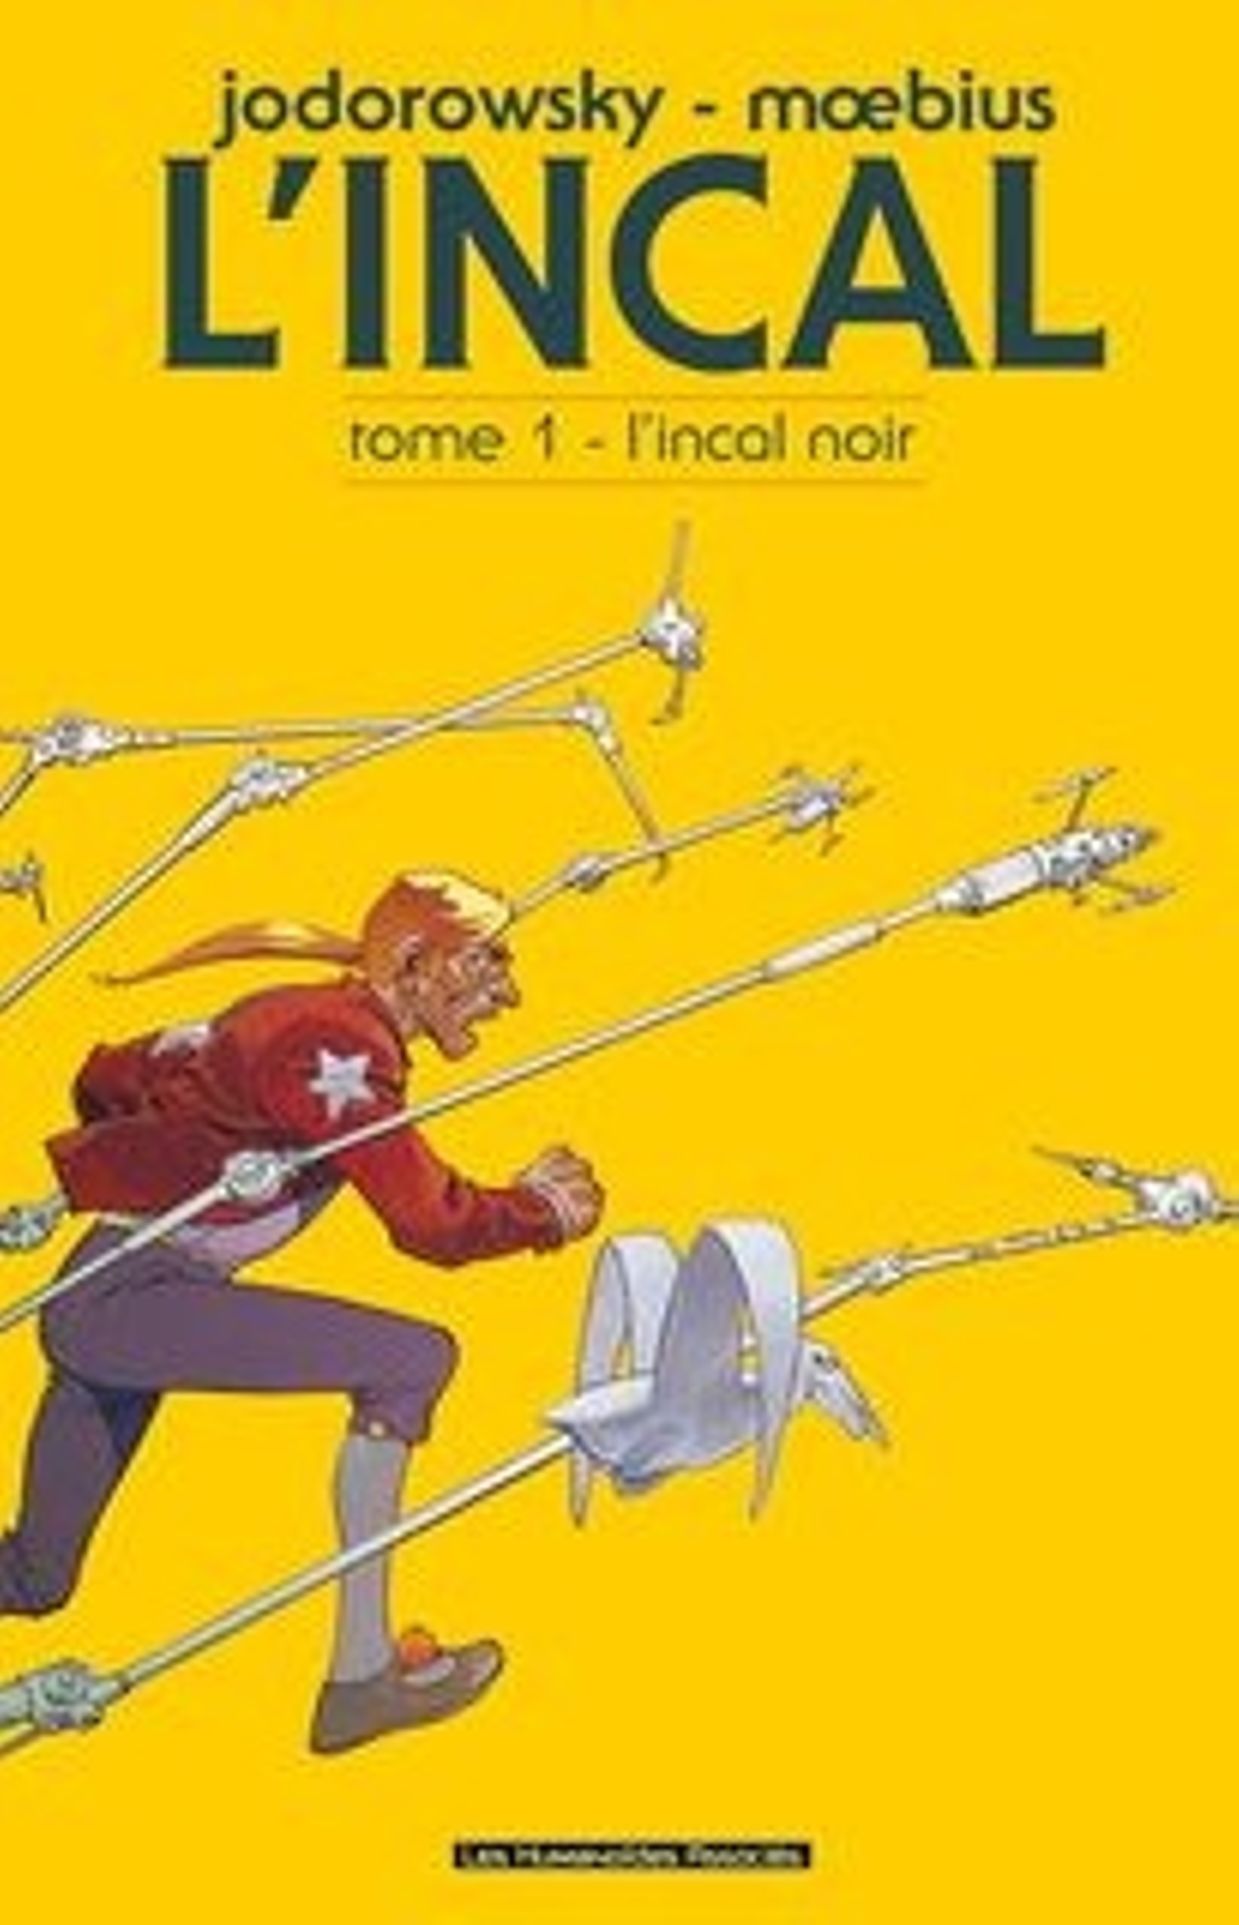 Première de couverture de la bande dessinée "L'incal" d'Alejandro Jodorowsky et Moebius (26 janvier 2011) 